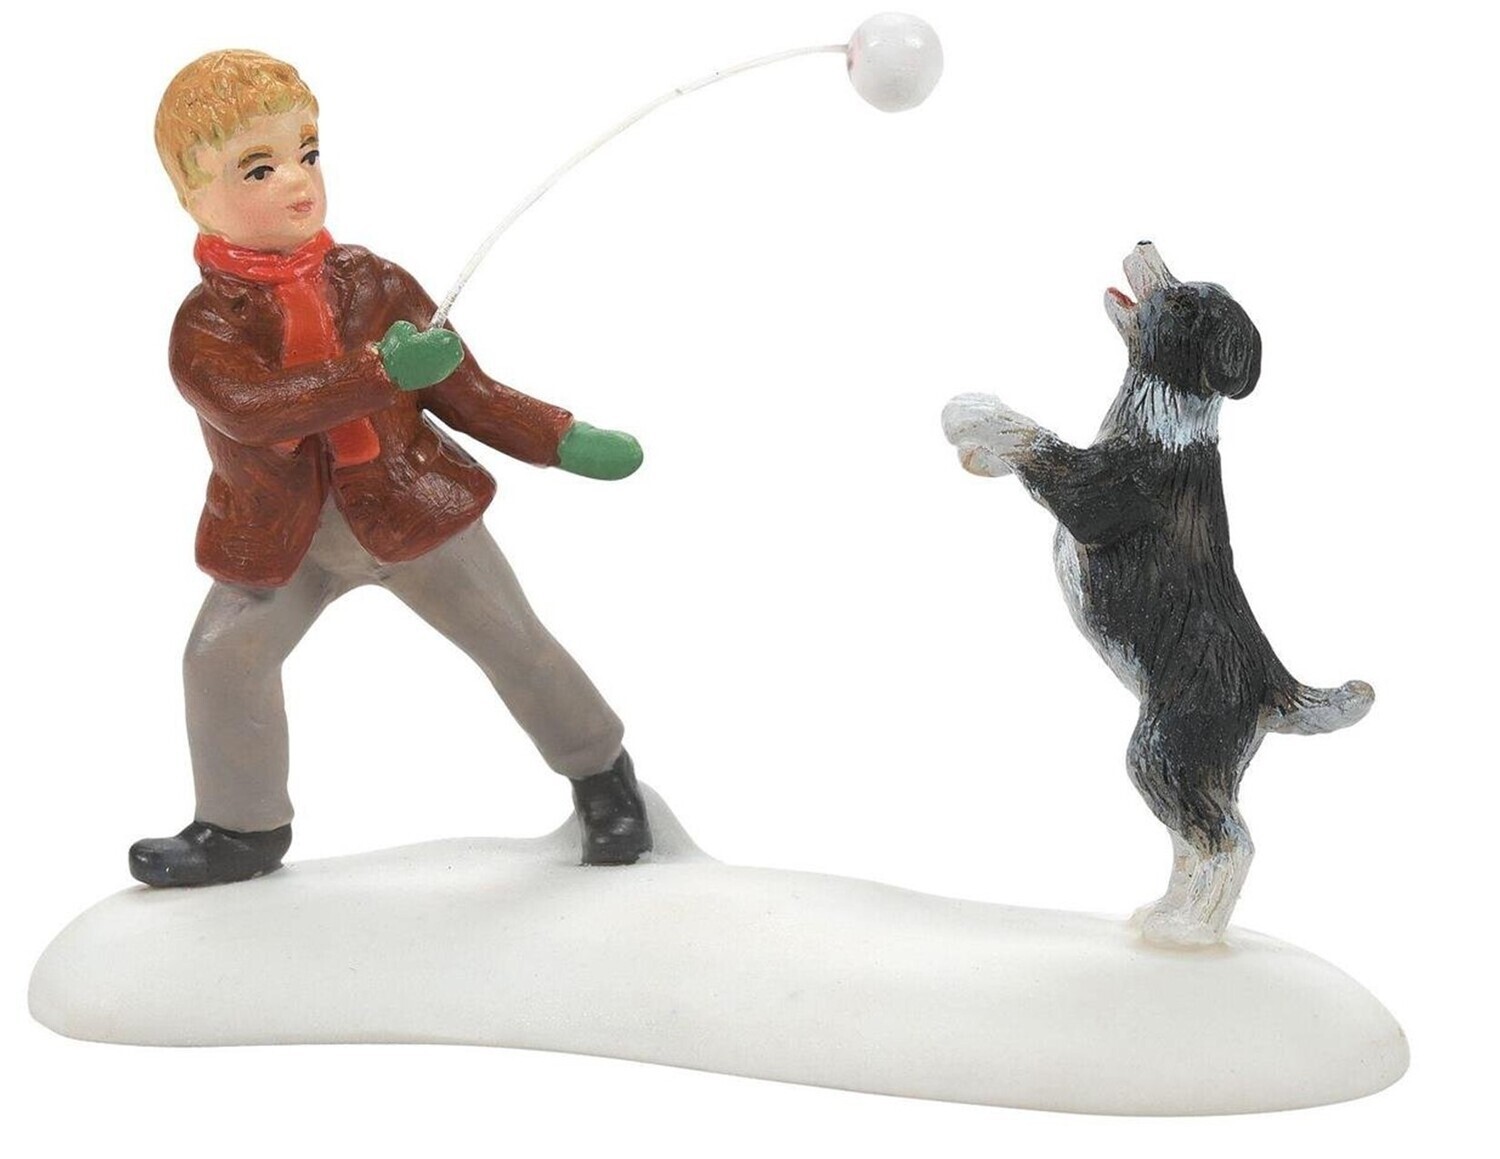 Department 56 Dicken's Village "Winter Game of Catch" Boy with Dog Figurine (6010458)